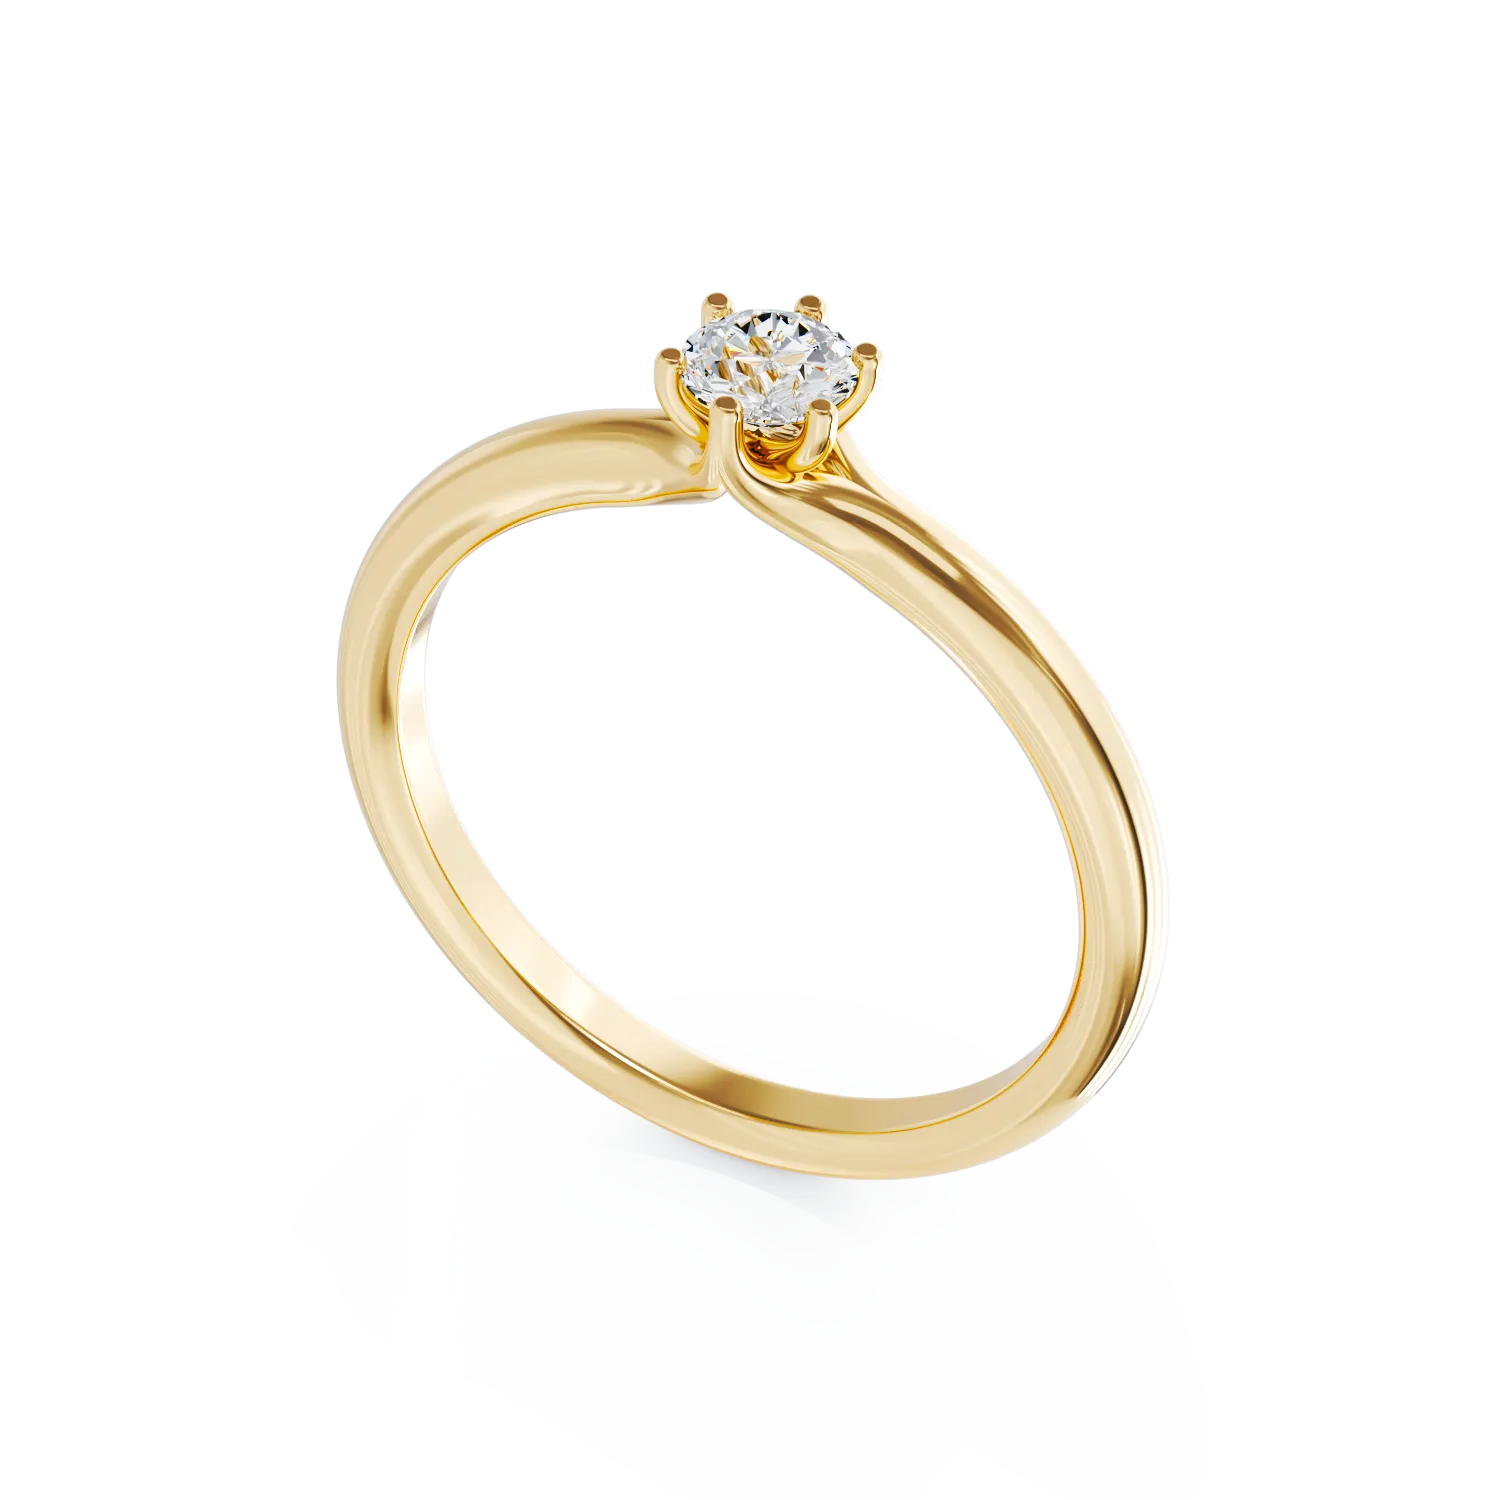 Годежен пръстен от жълто злато с диамант пасианс 0.2кт